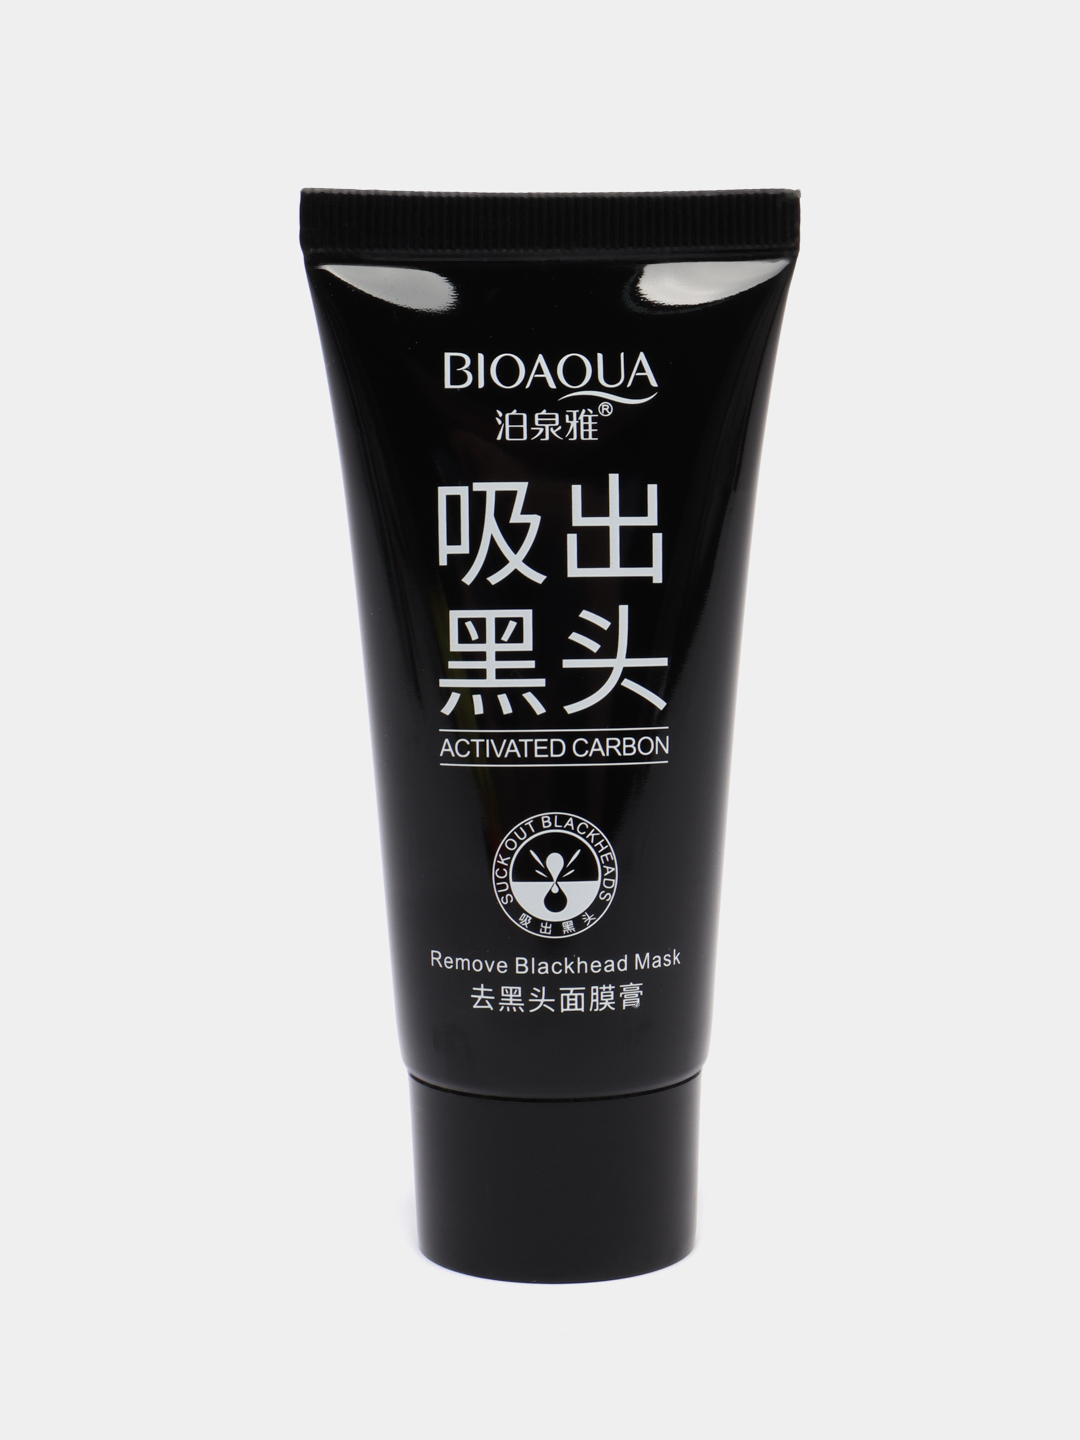 Корейская черная маска от черных точек | Цены, отзывы, купить в Москве от Premium Korea